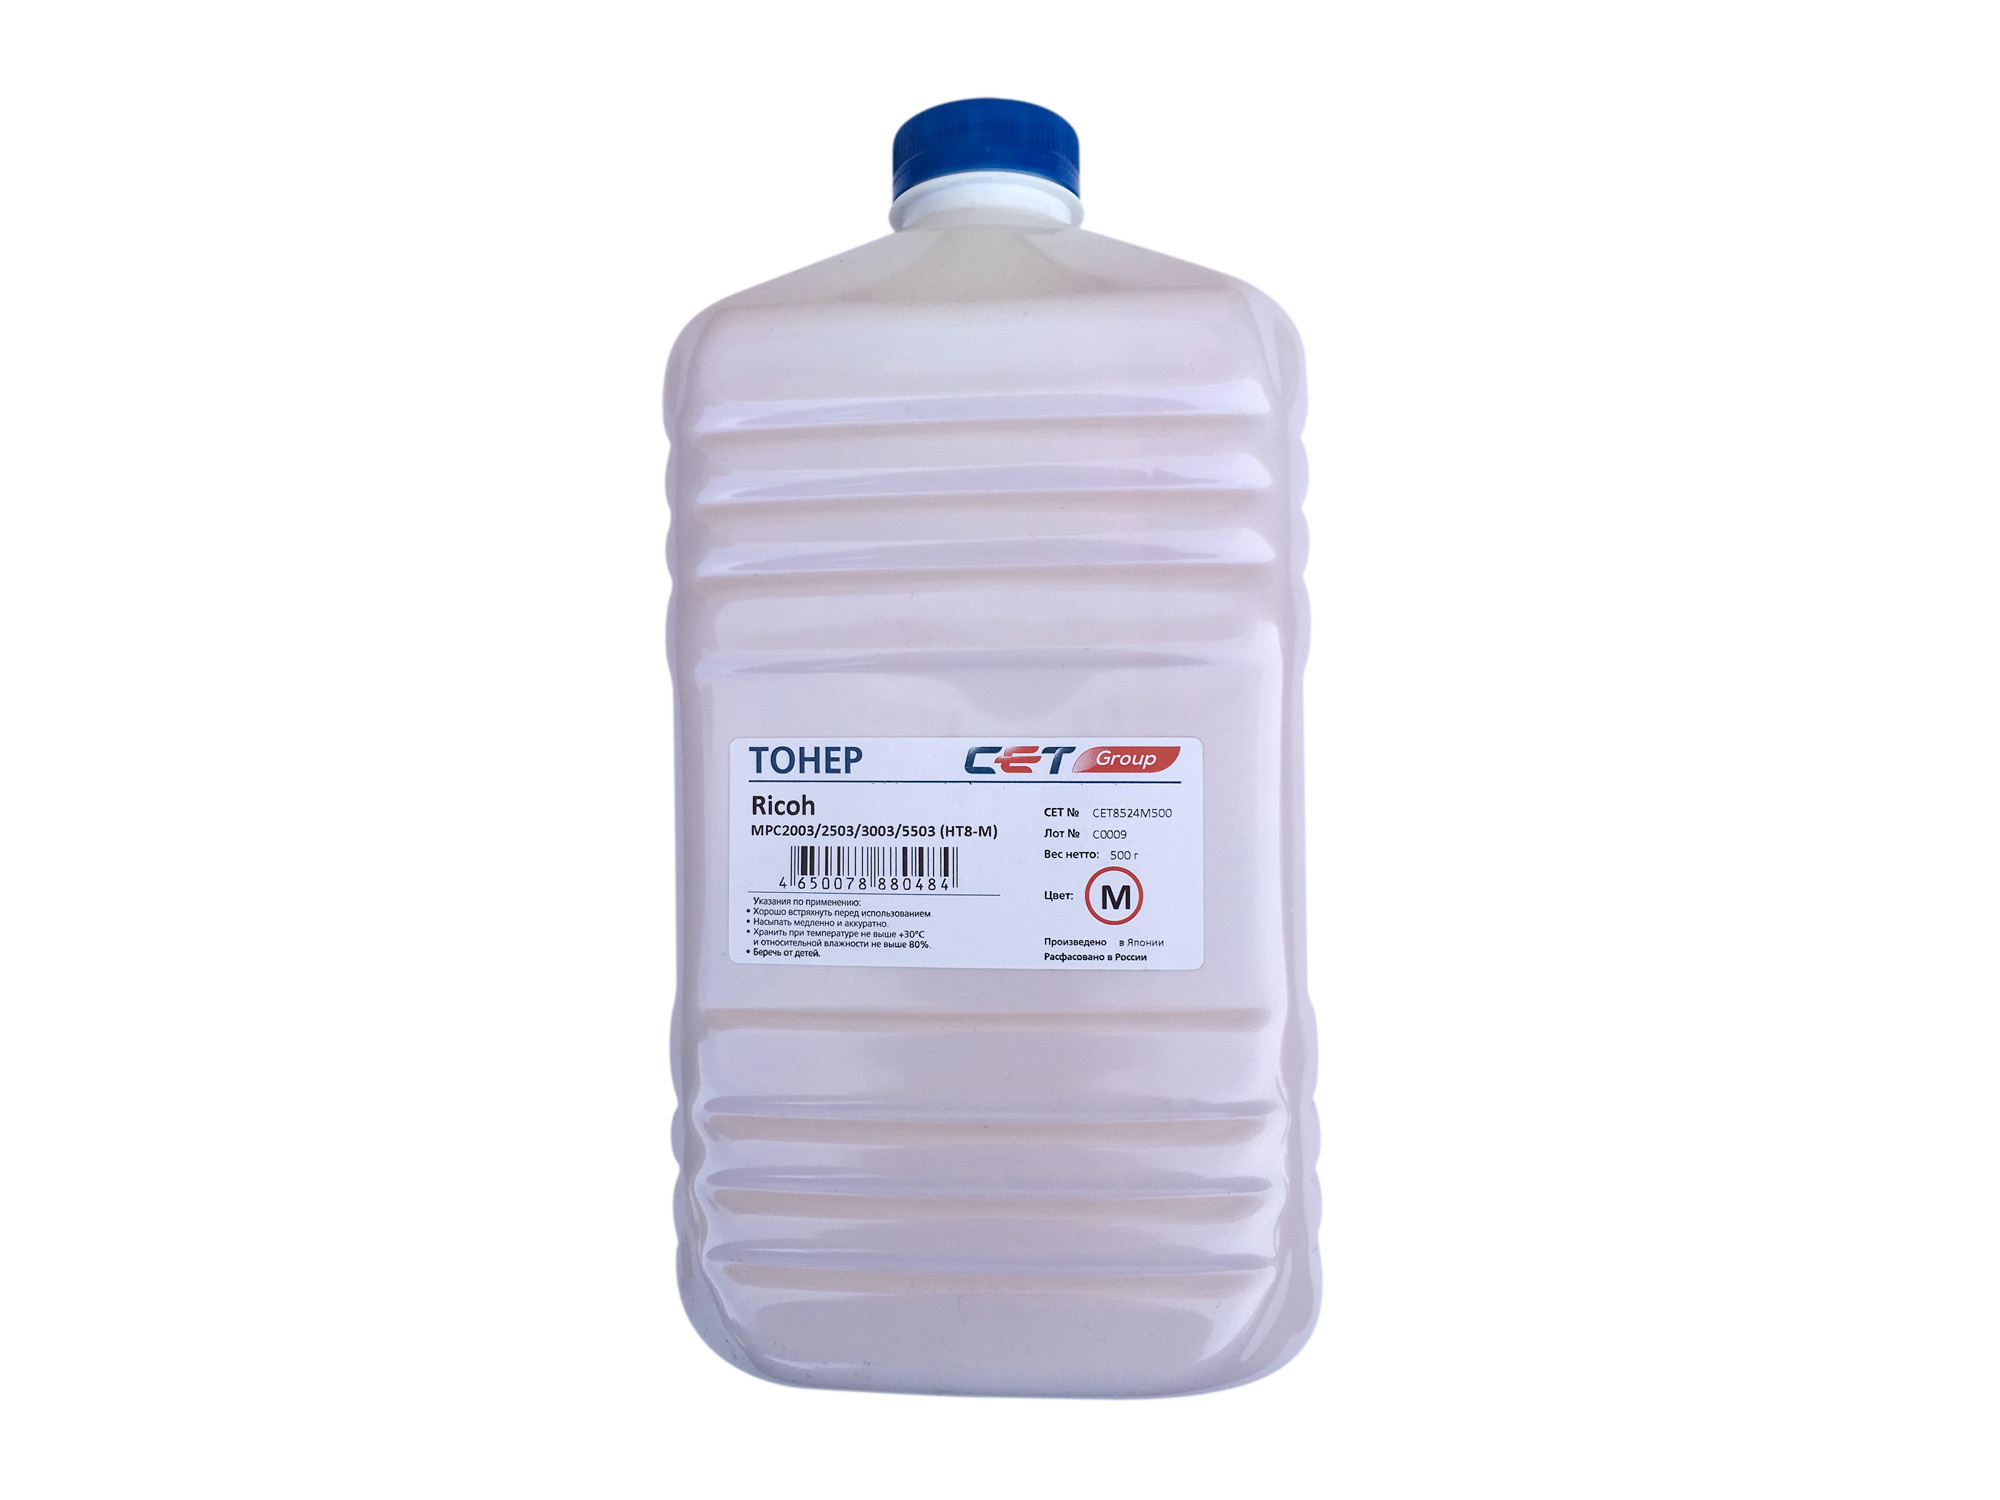 Тонер Cet HT8-M CET8524M500 пурпурный бутылка 500гр. для принтера RICOH MPC2011/C2004/C2504/C3003/C307, IMC3000